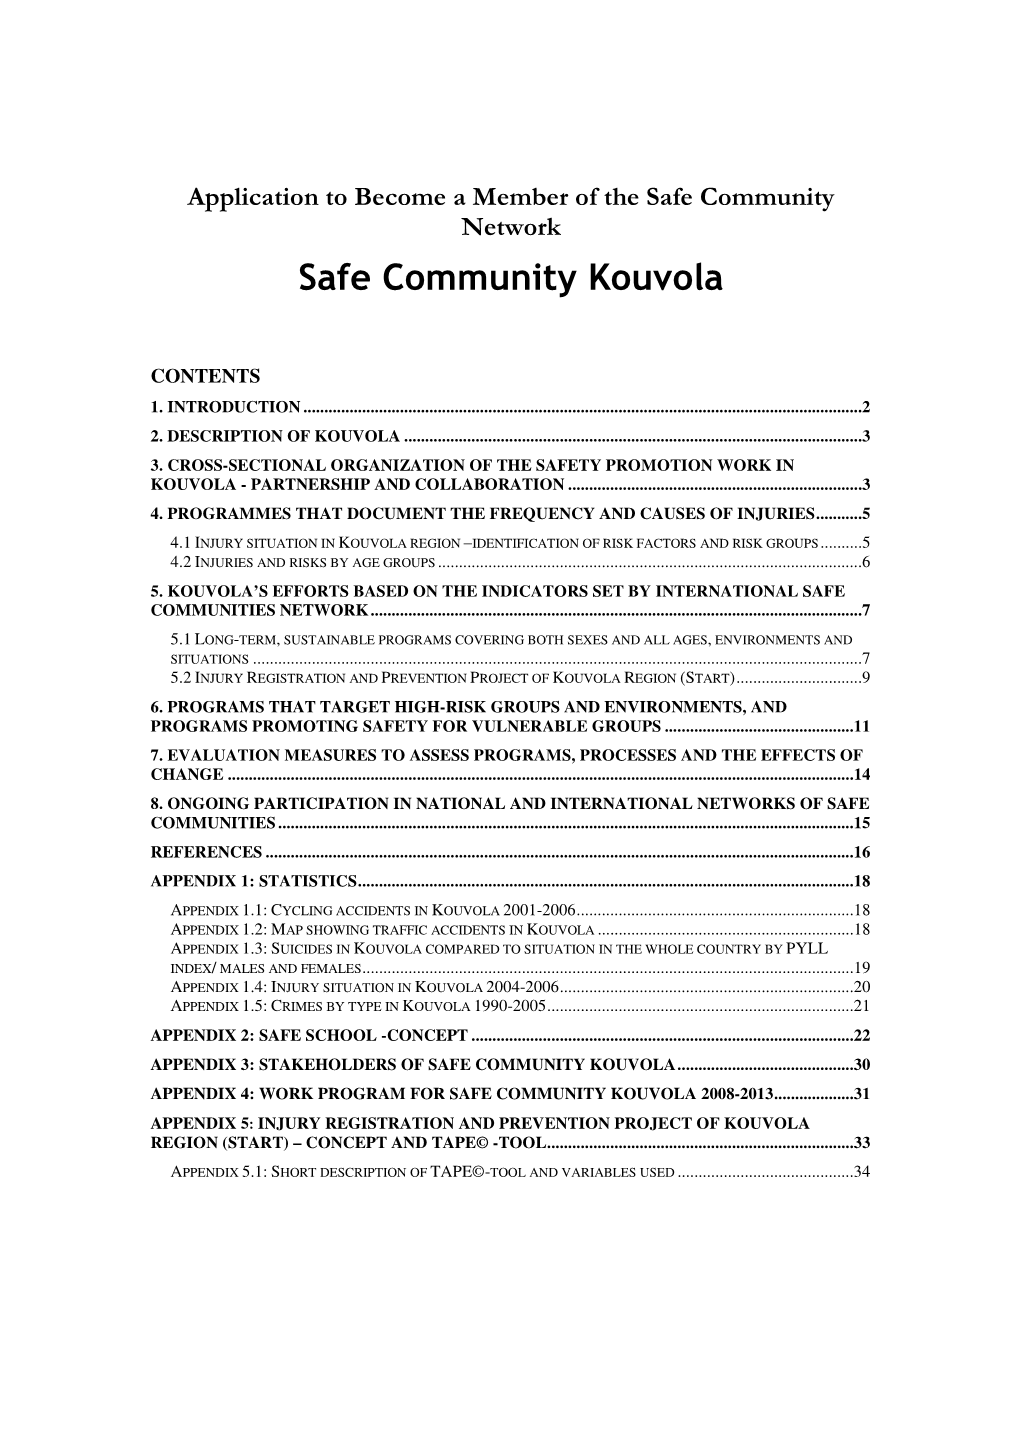 Safe Community Kouvola